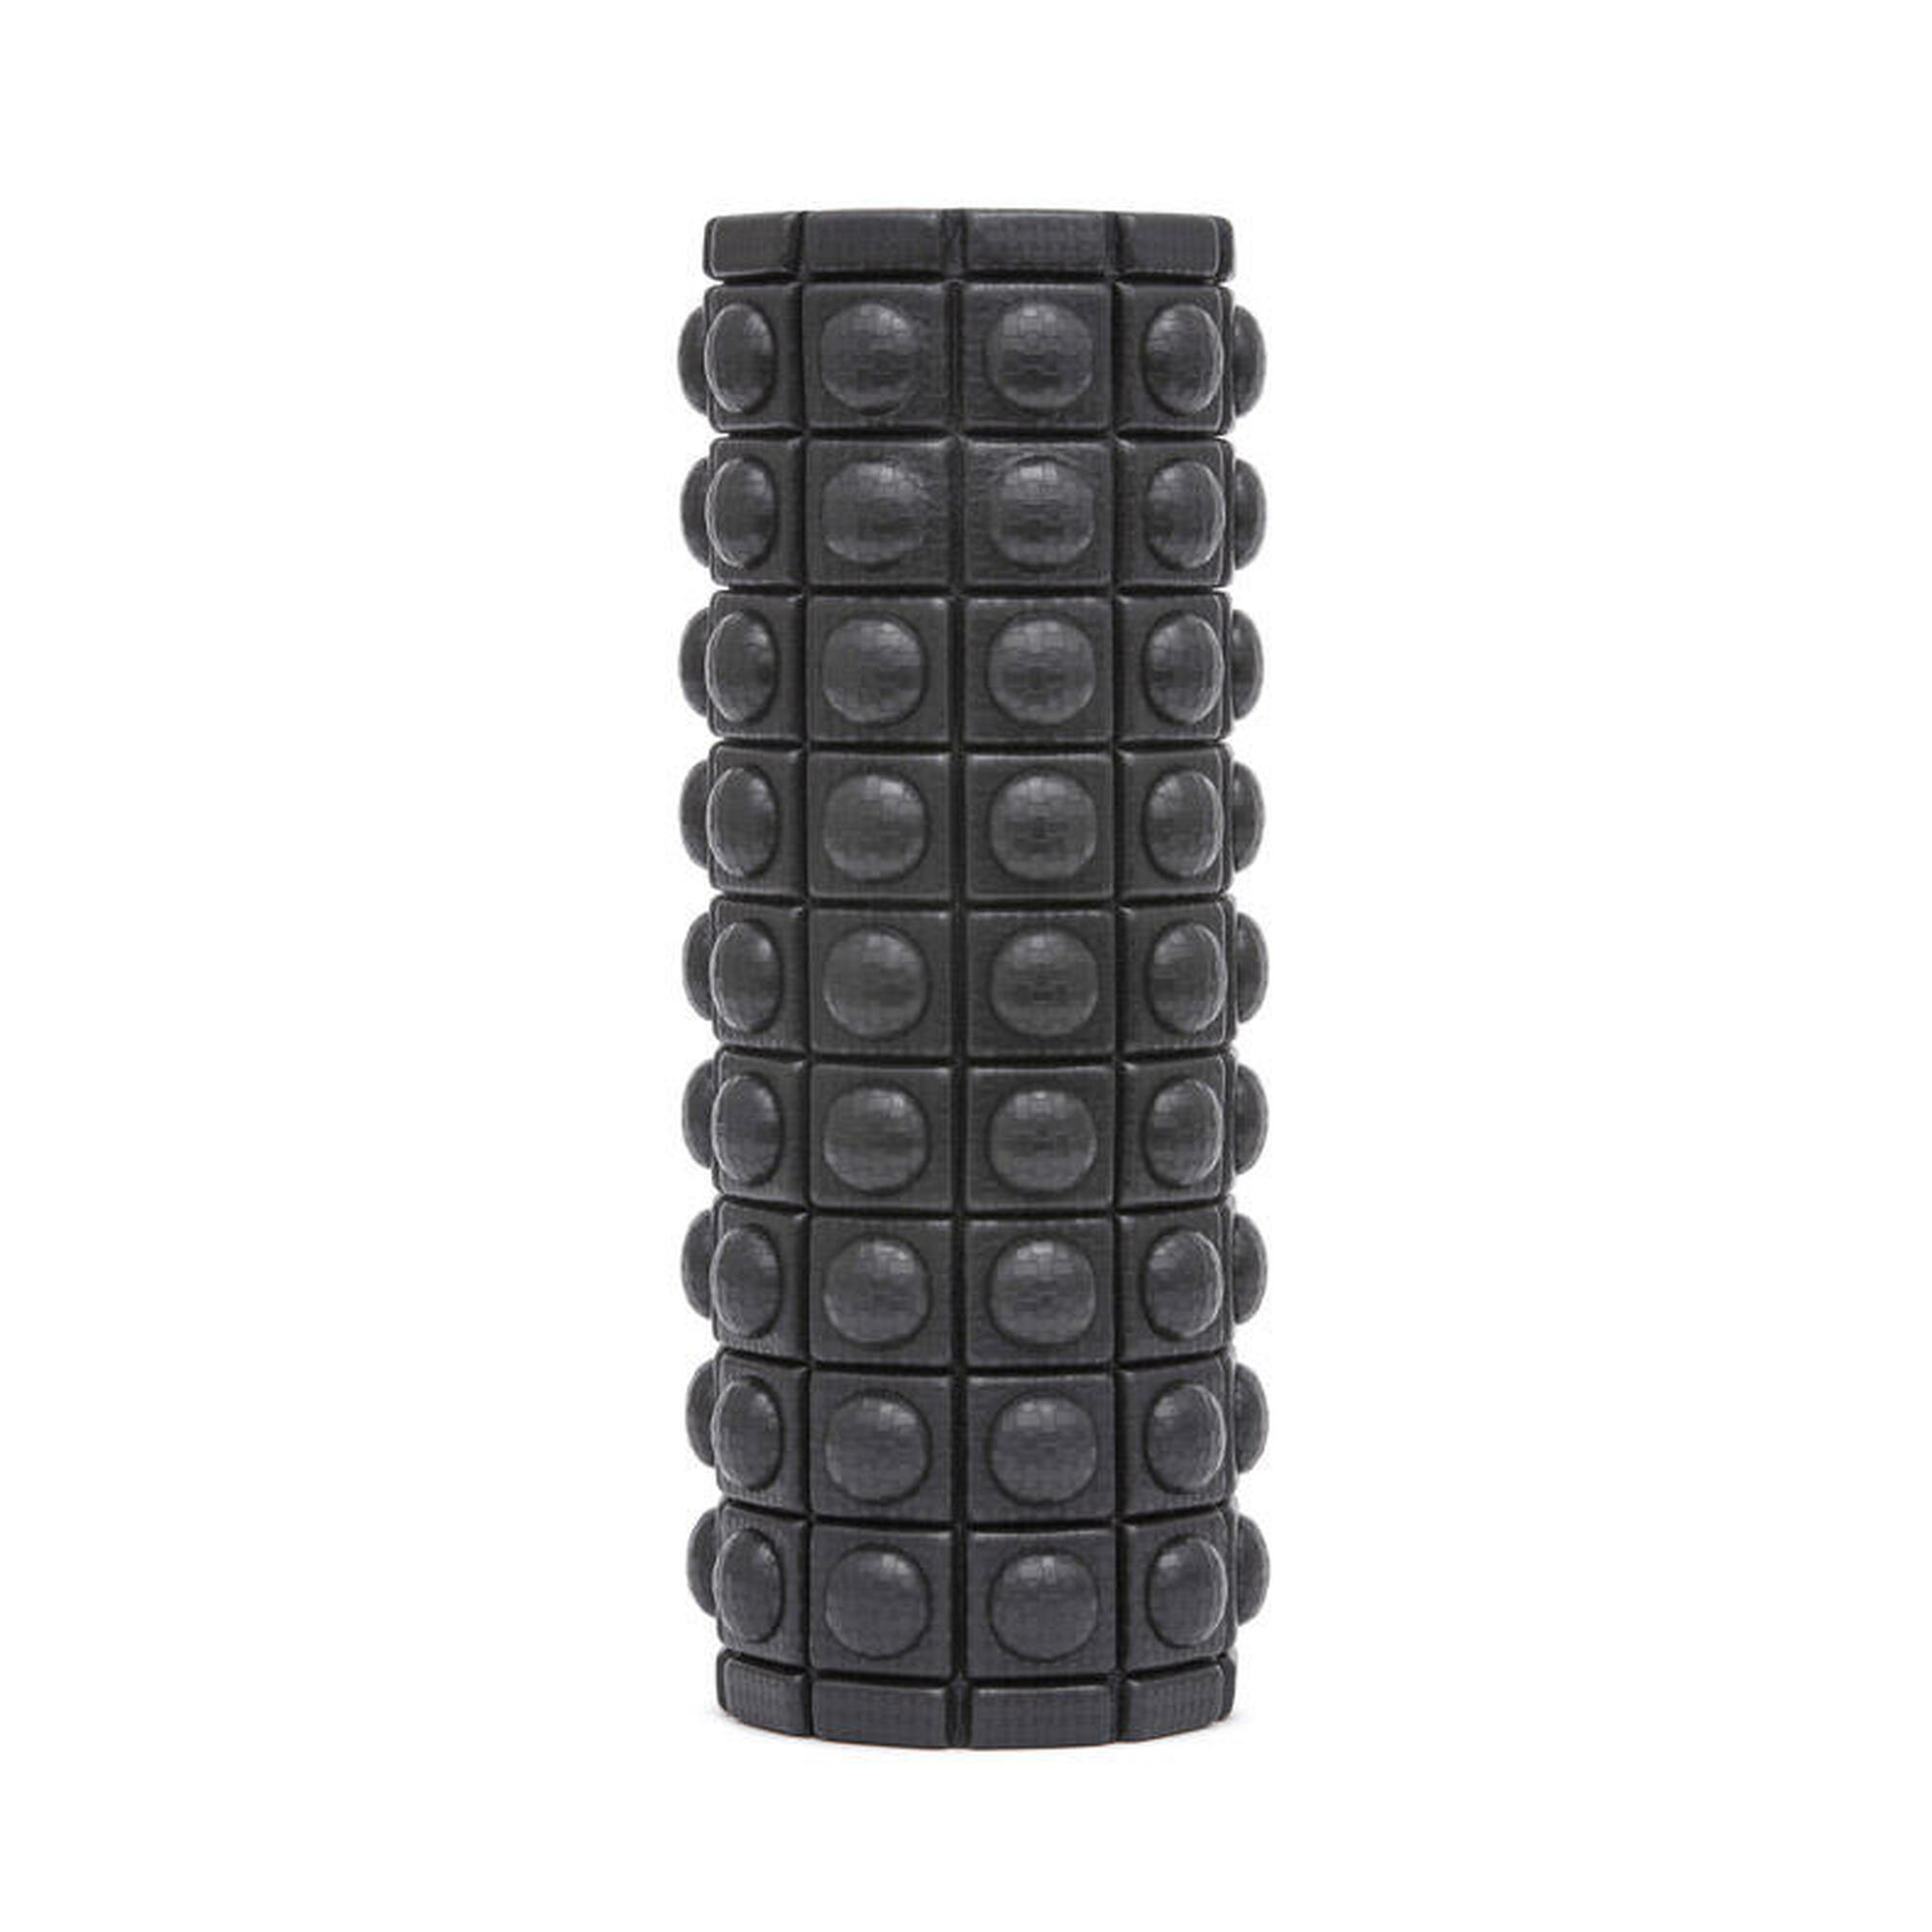 Rodillo de espuma con textura Adidas- Negro 33cm